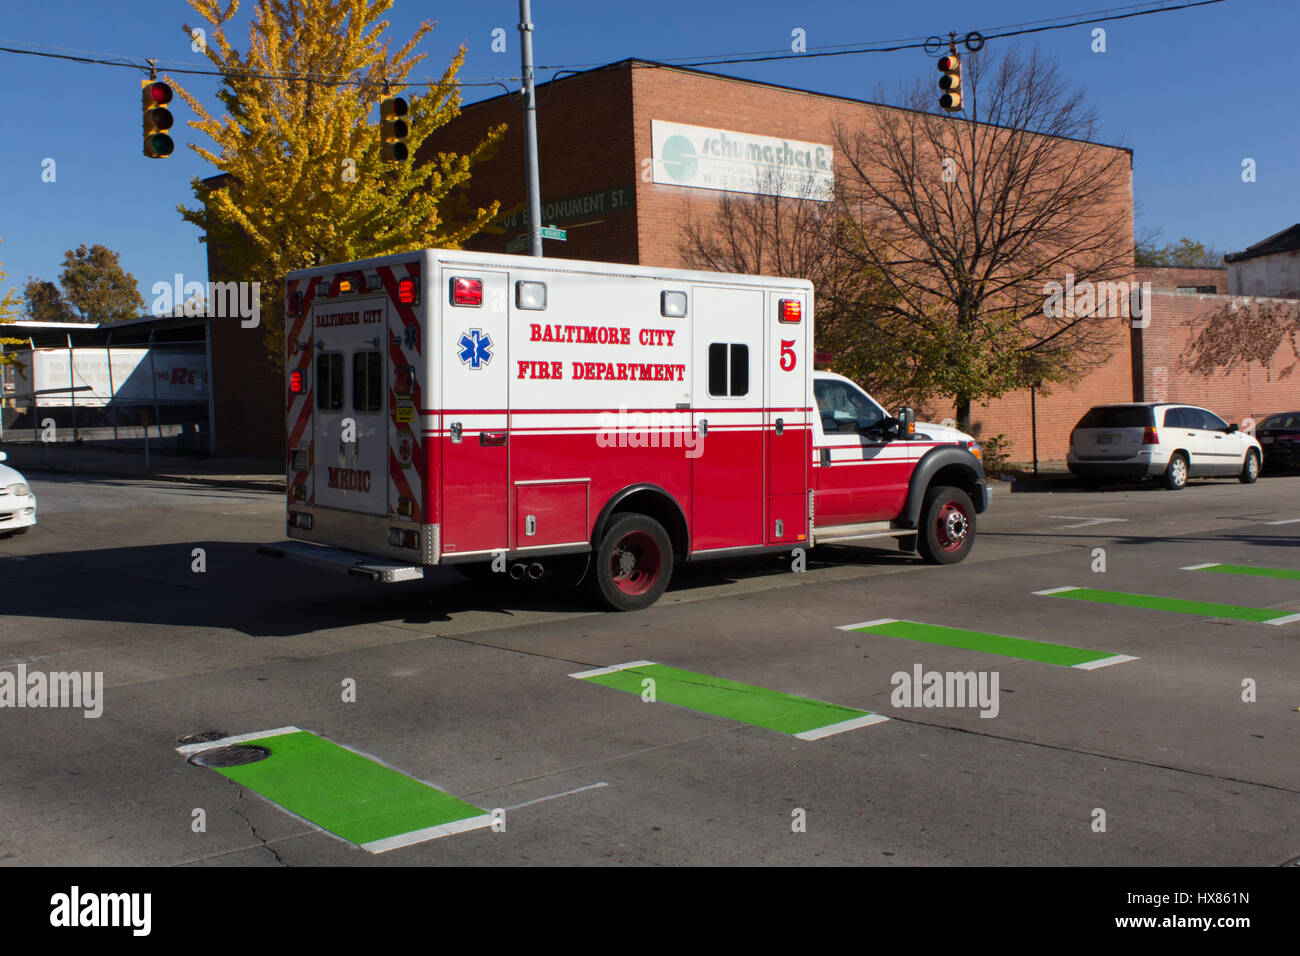 Baltimore, Maryland - novembre 18, 2016 : service d'incendie de Baltimore City ambulance sur un appel sur greenmount ave. Banque D'Images